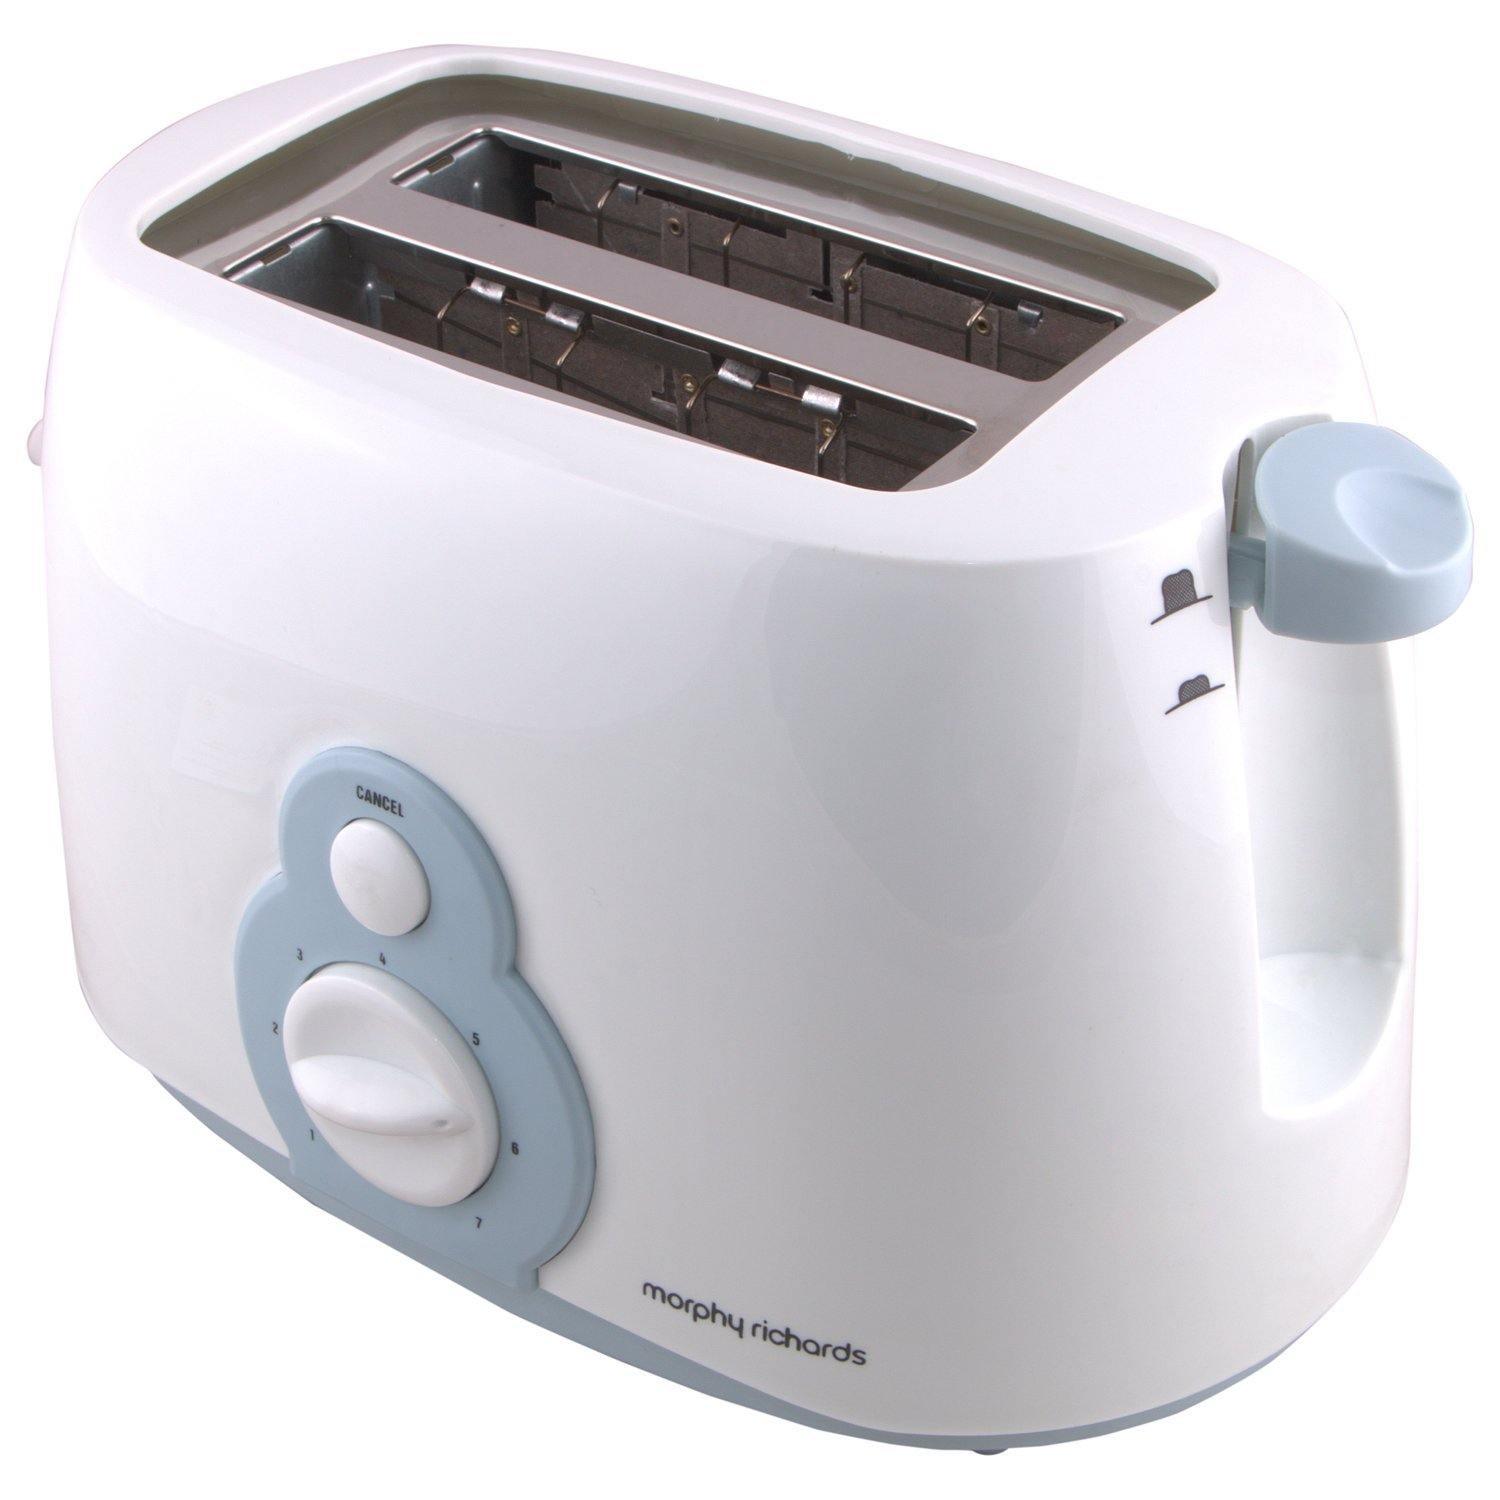 Morphy Richards at 202 2-Slice Pop-up Toaster-Home & Kitchen Appliances-dealsplant